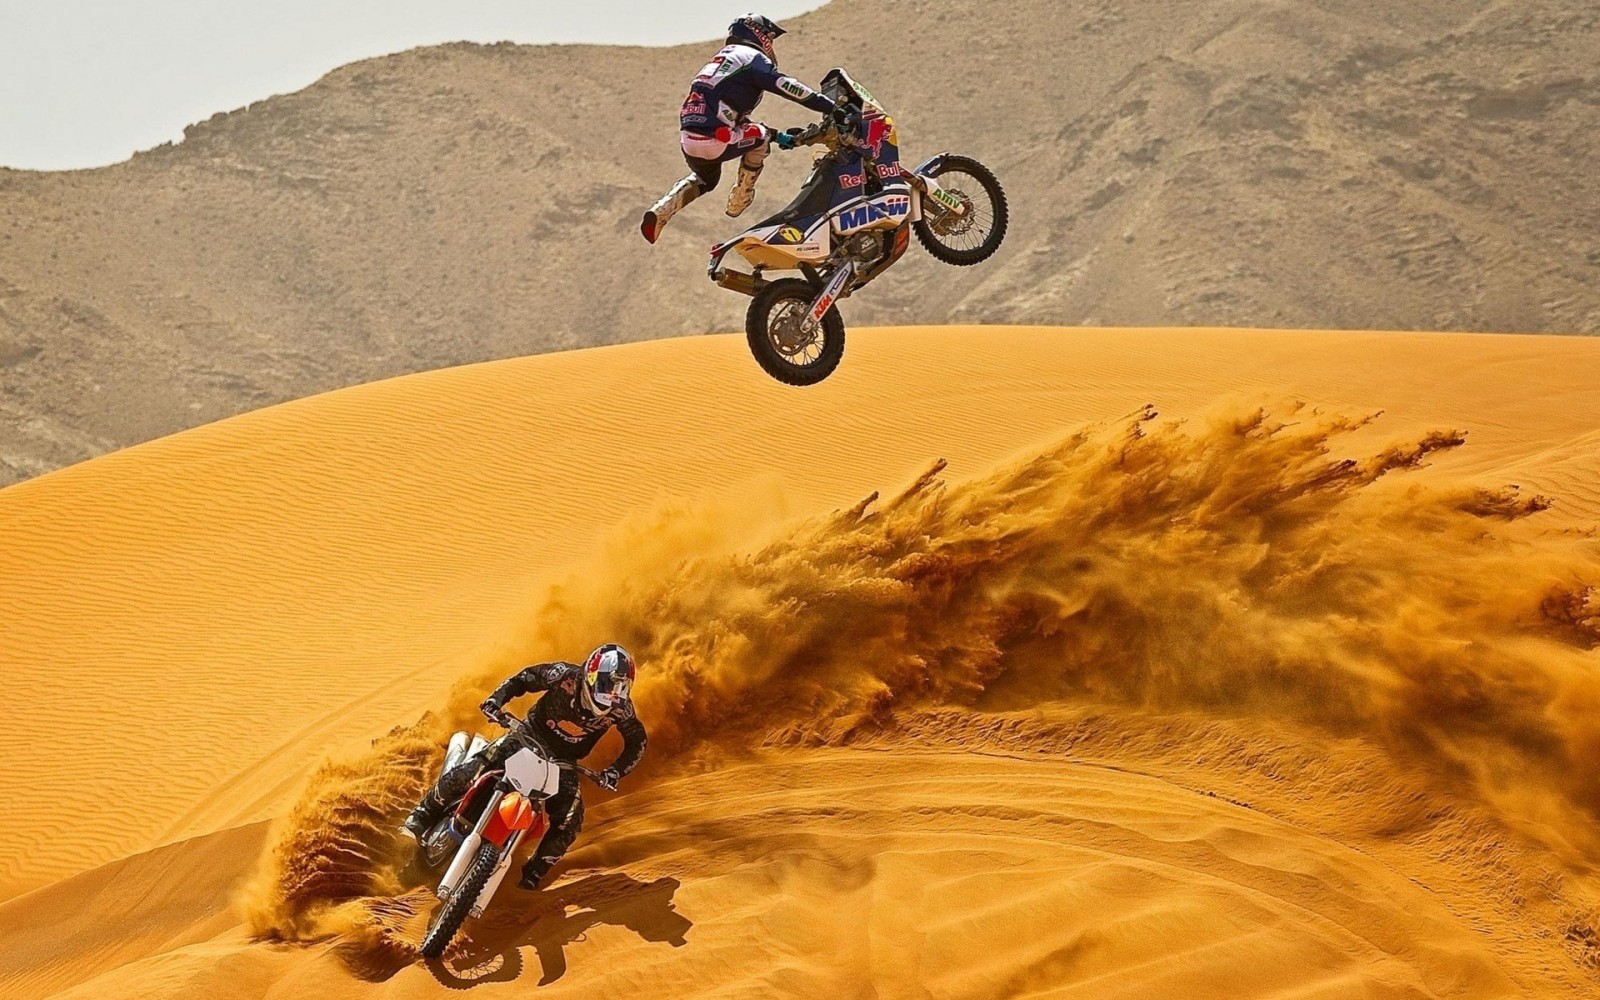 عکس زمینه موتور سواری در خاک بیابان و پرش با تریل